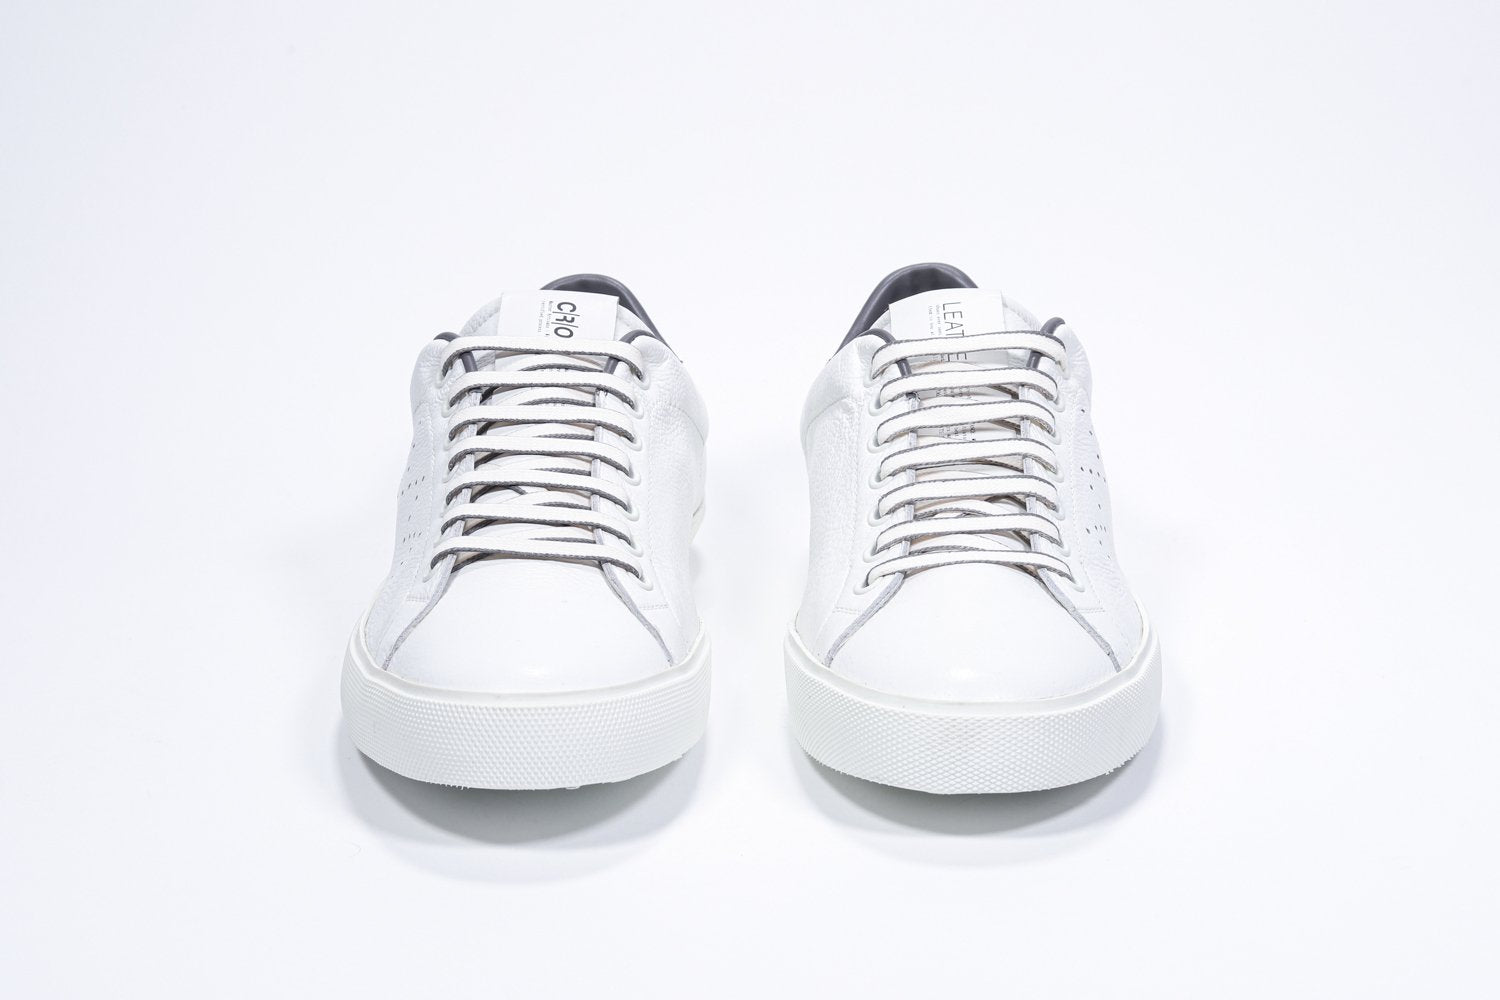 Vue de face de la chaussure blanche sneaker avec des détails gris foncé et le logo perforé de la couronne sur la tige. Tige en cuir et semelle en caoutchouc blanc.